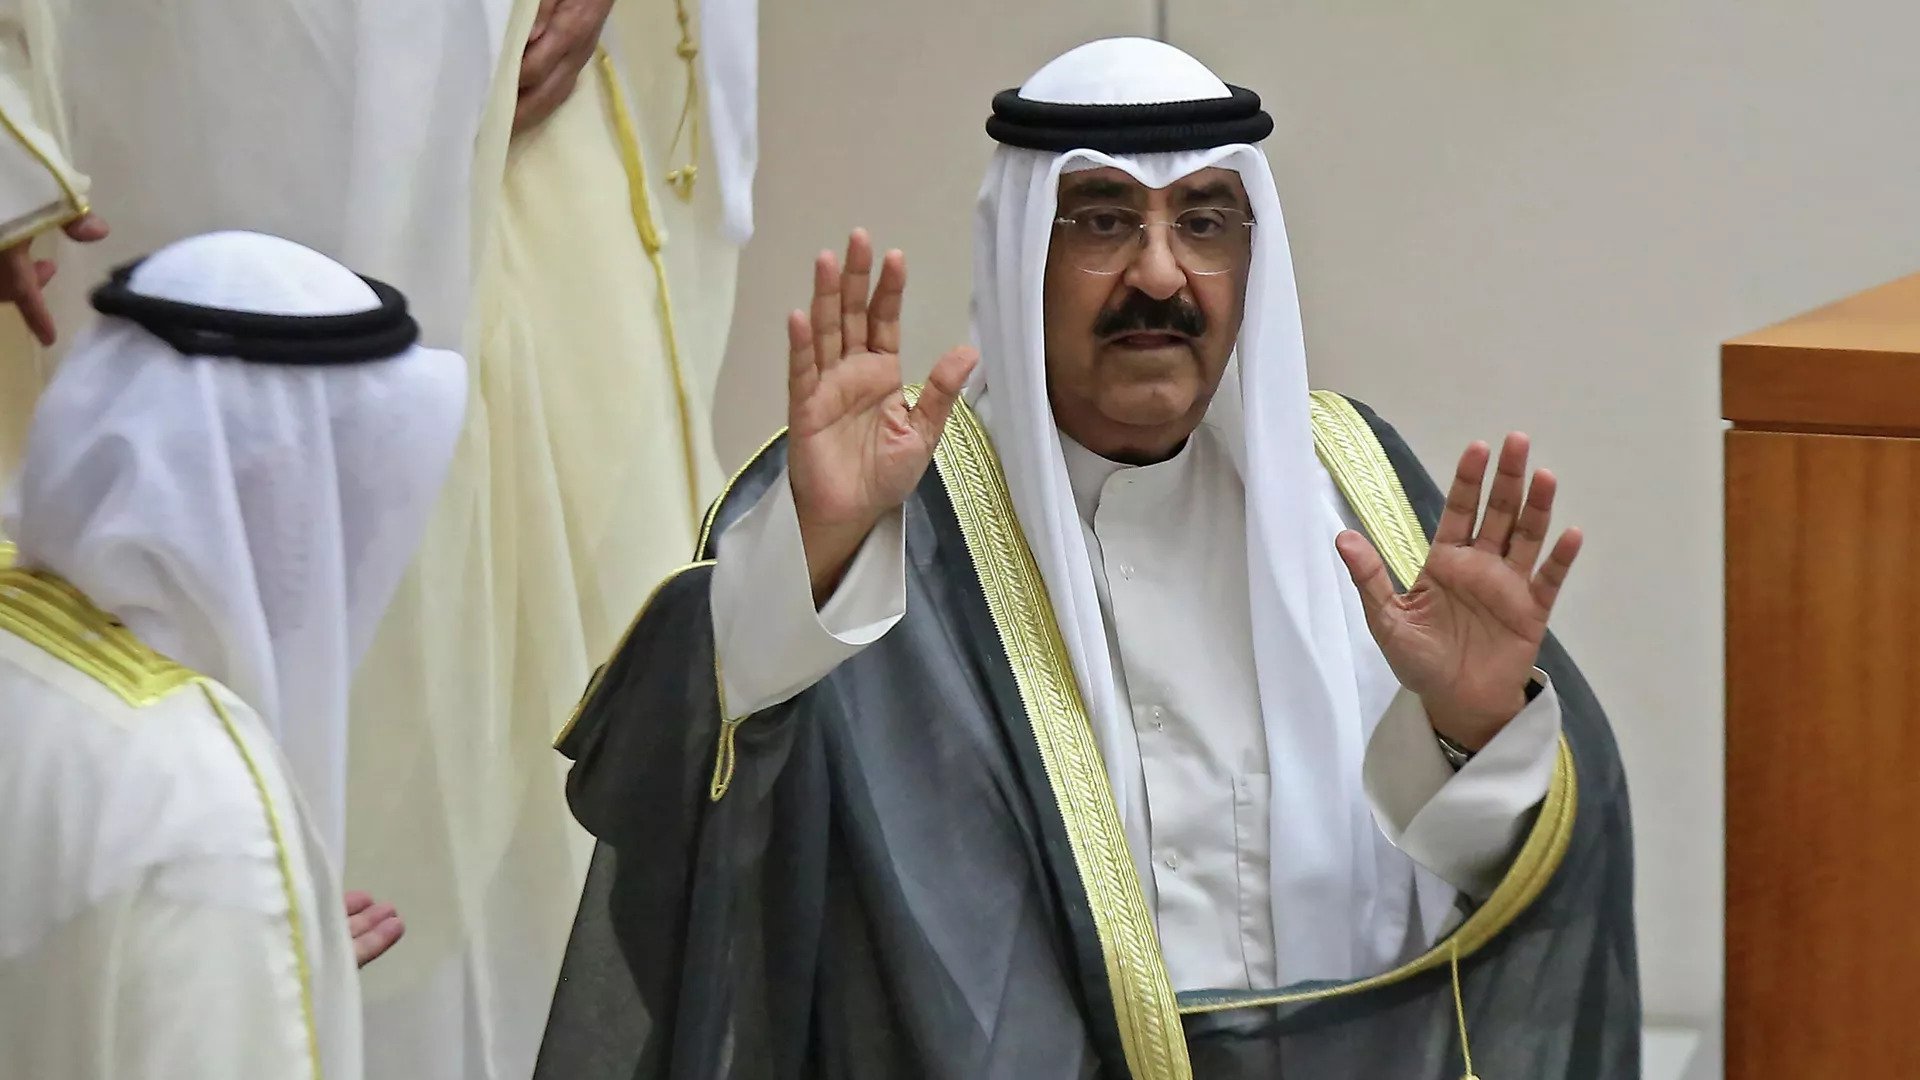 ولي العهد الكويتي يتأثر خلال إلقاء كلمته في مجلس الأمة.. فيديو